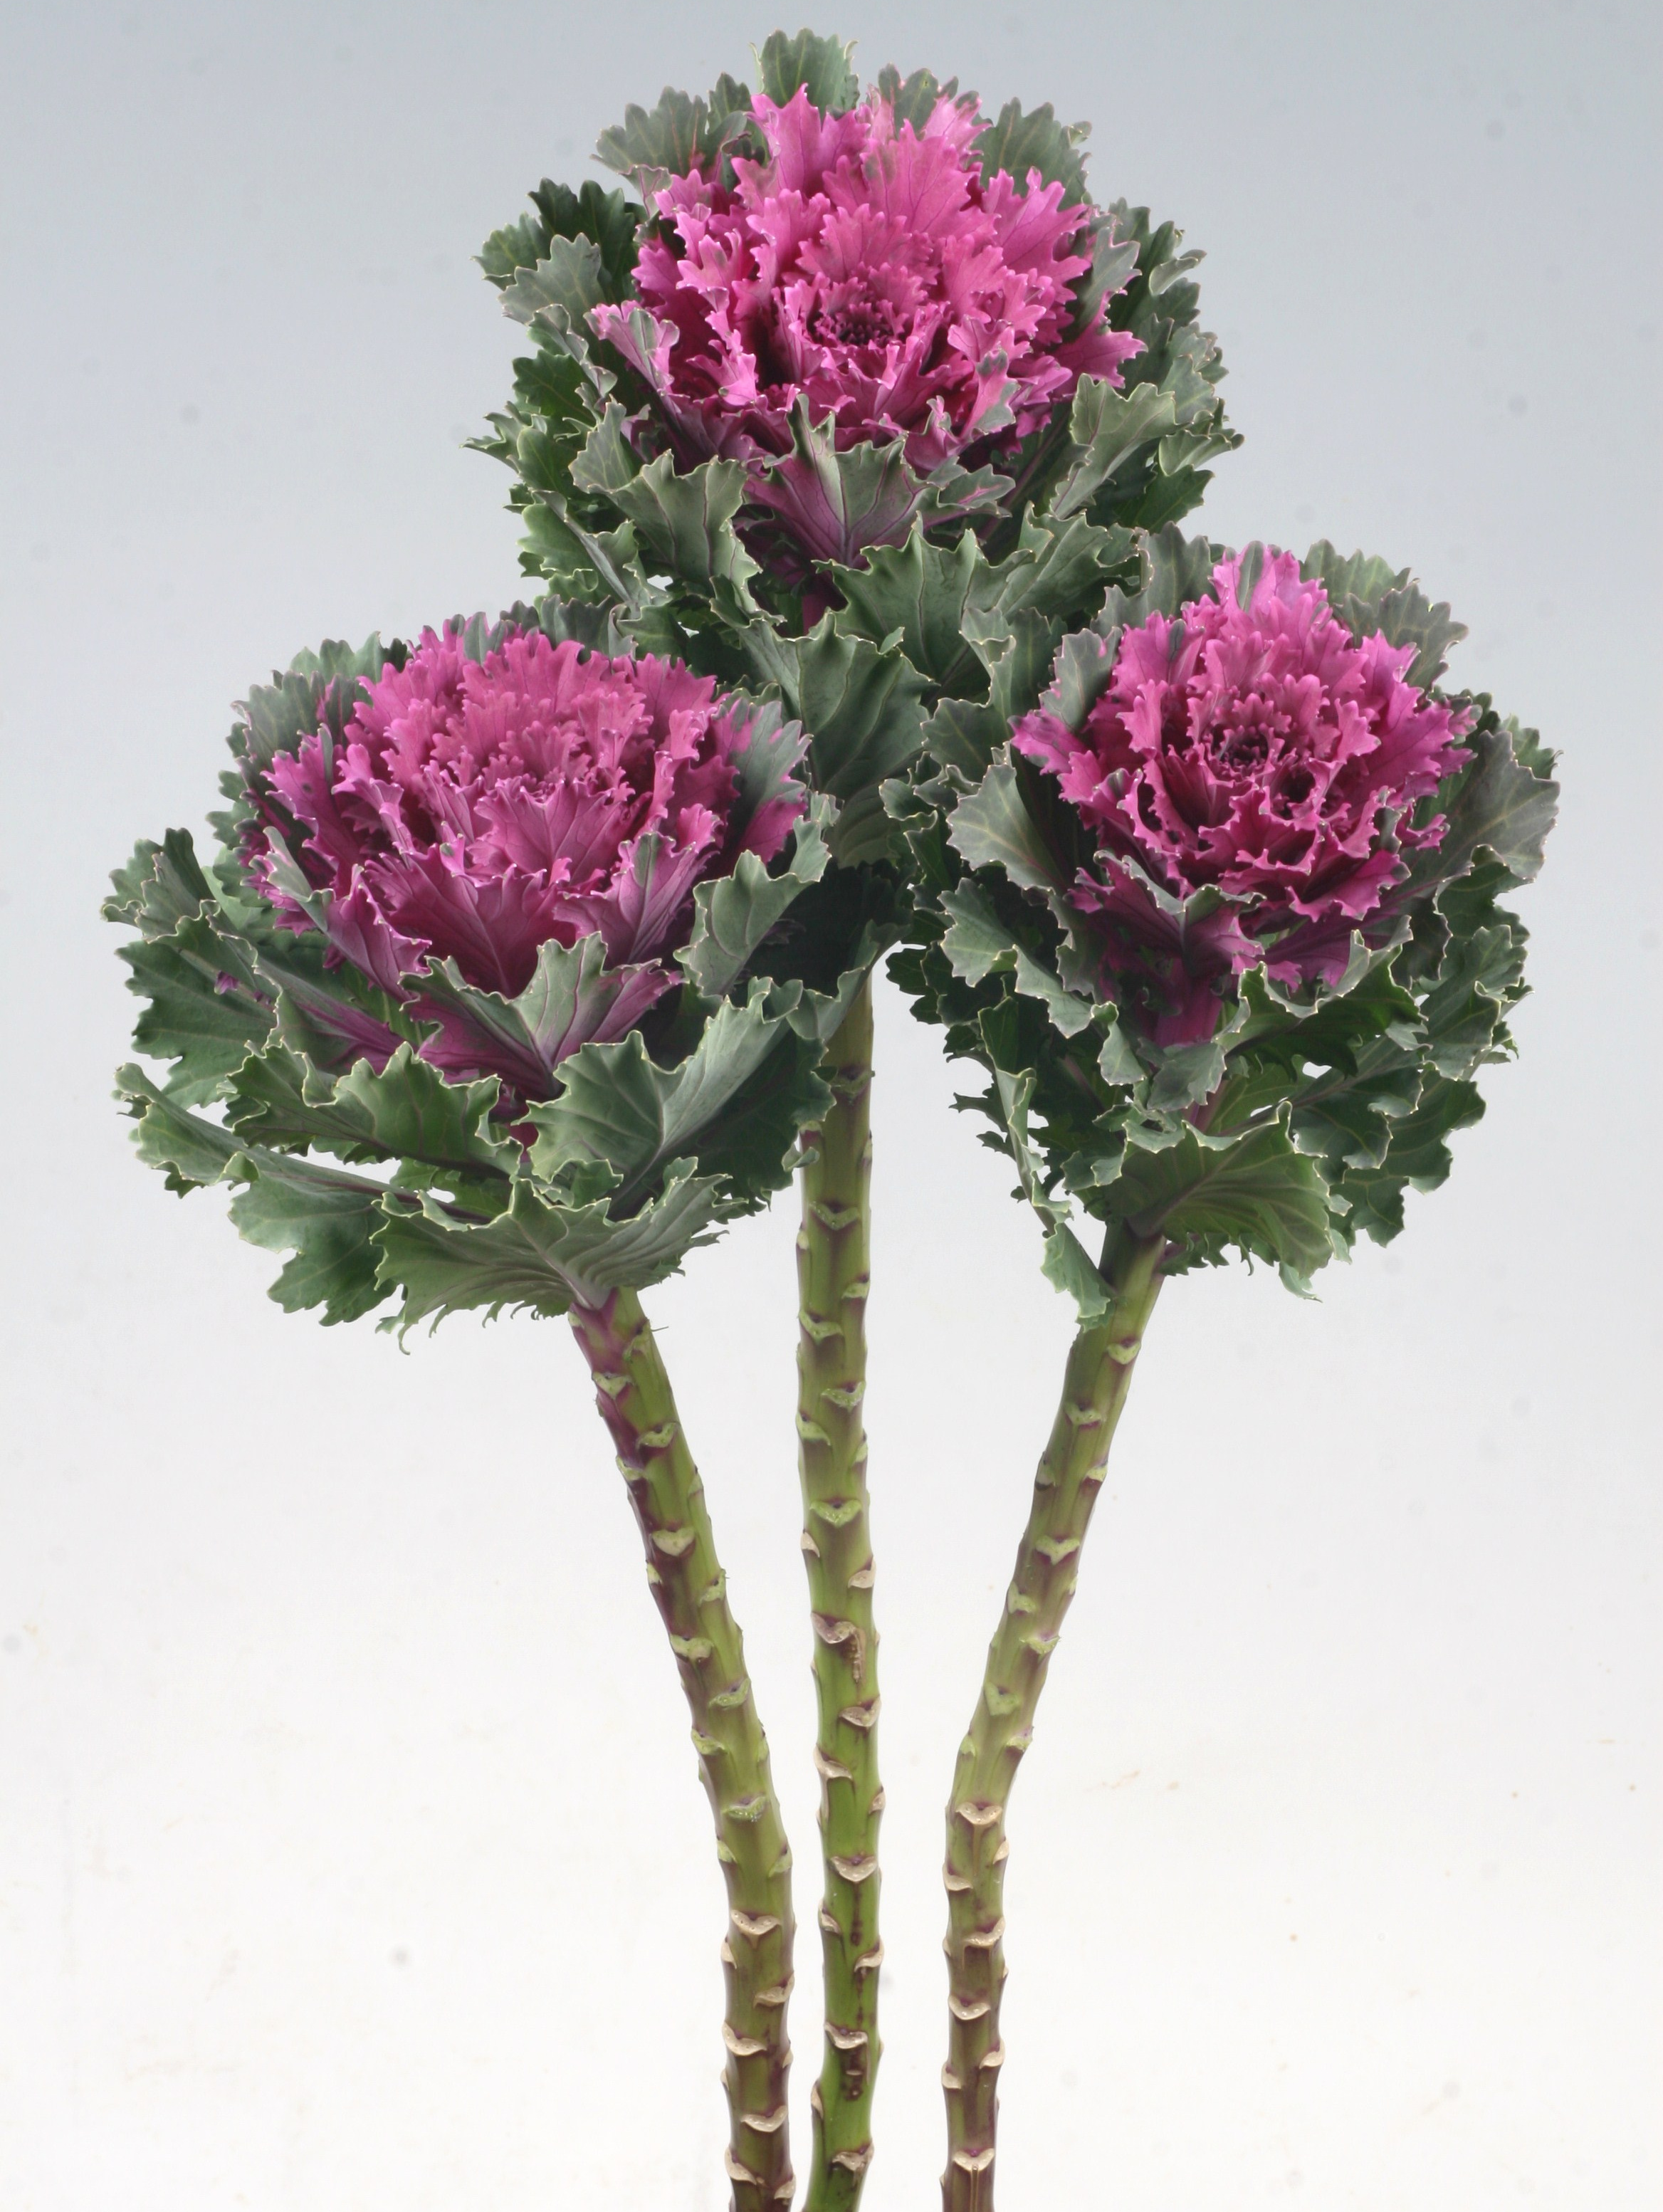 Flowering Kale, Altair